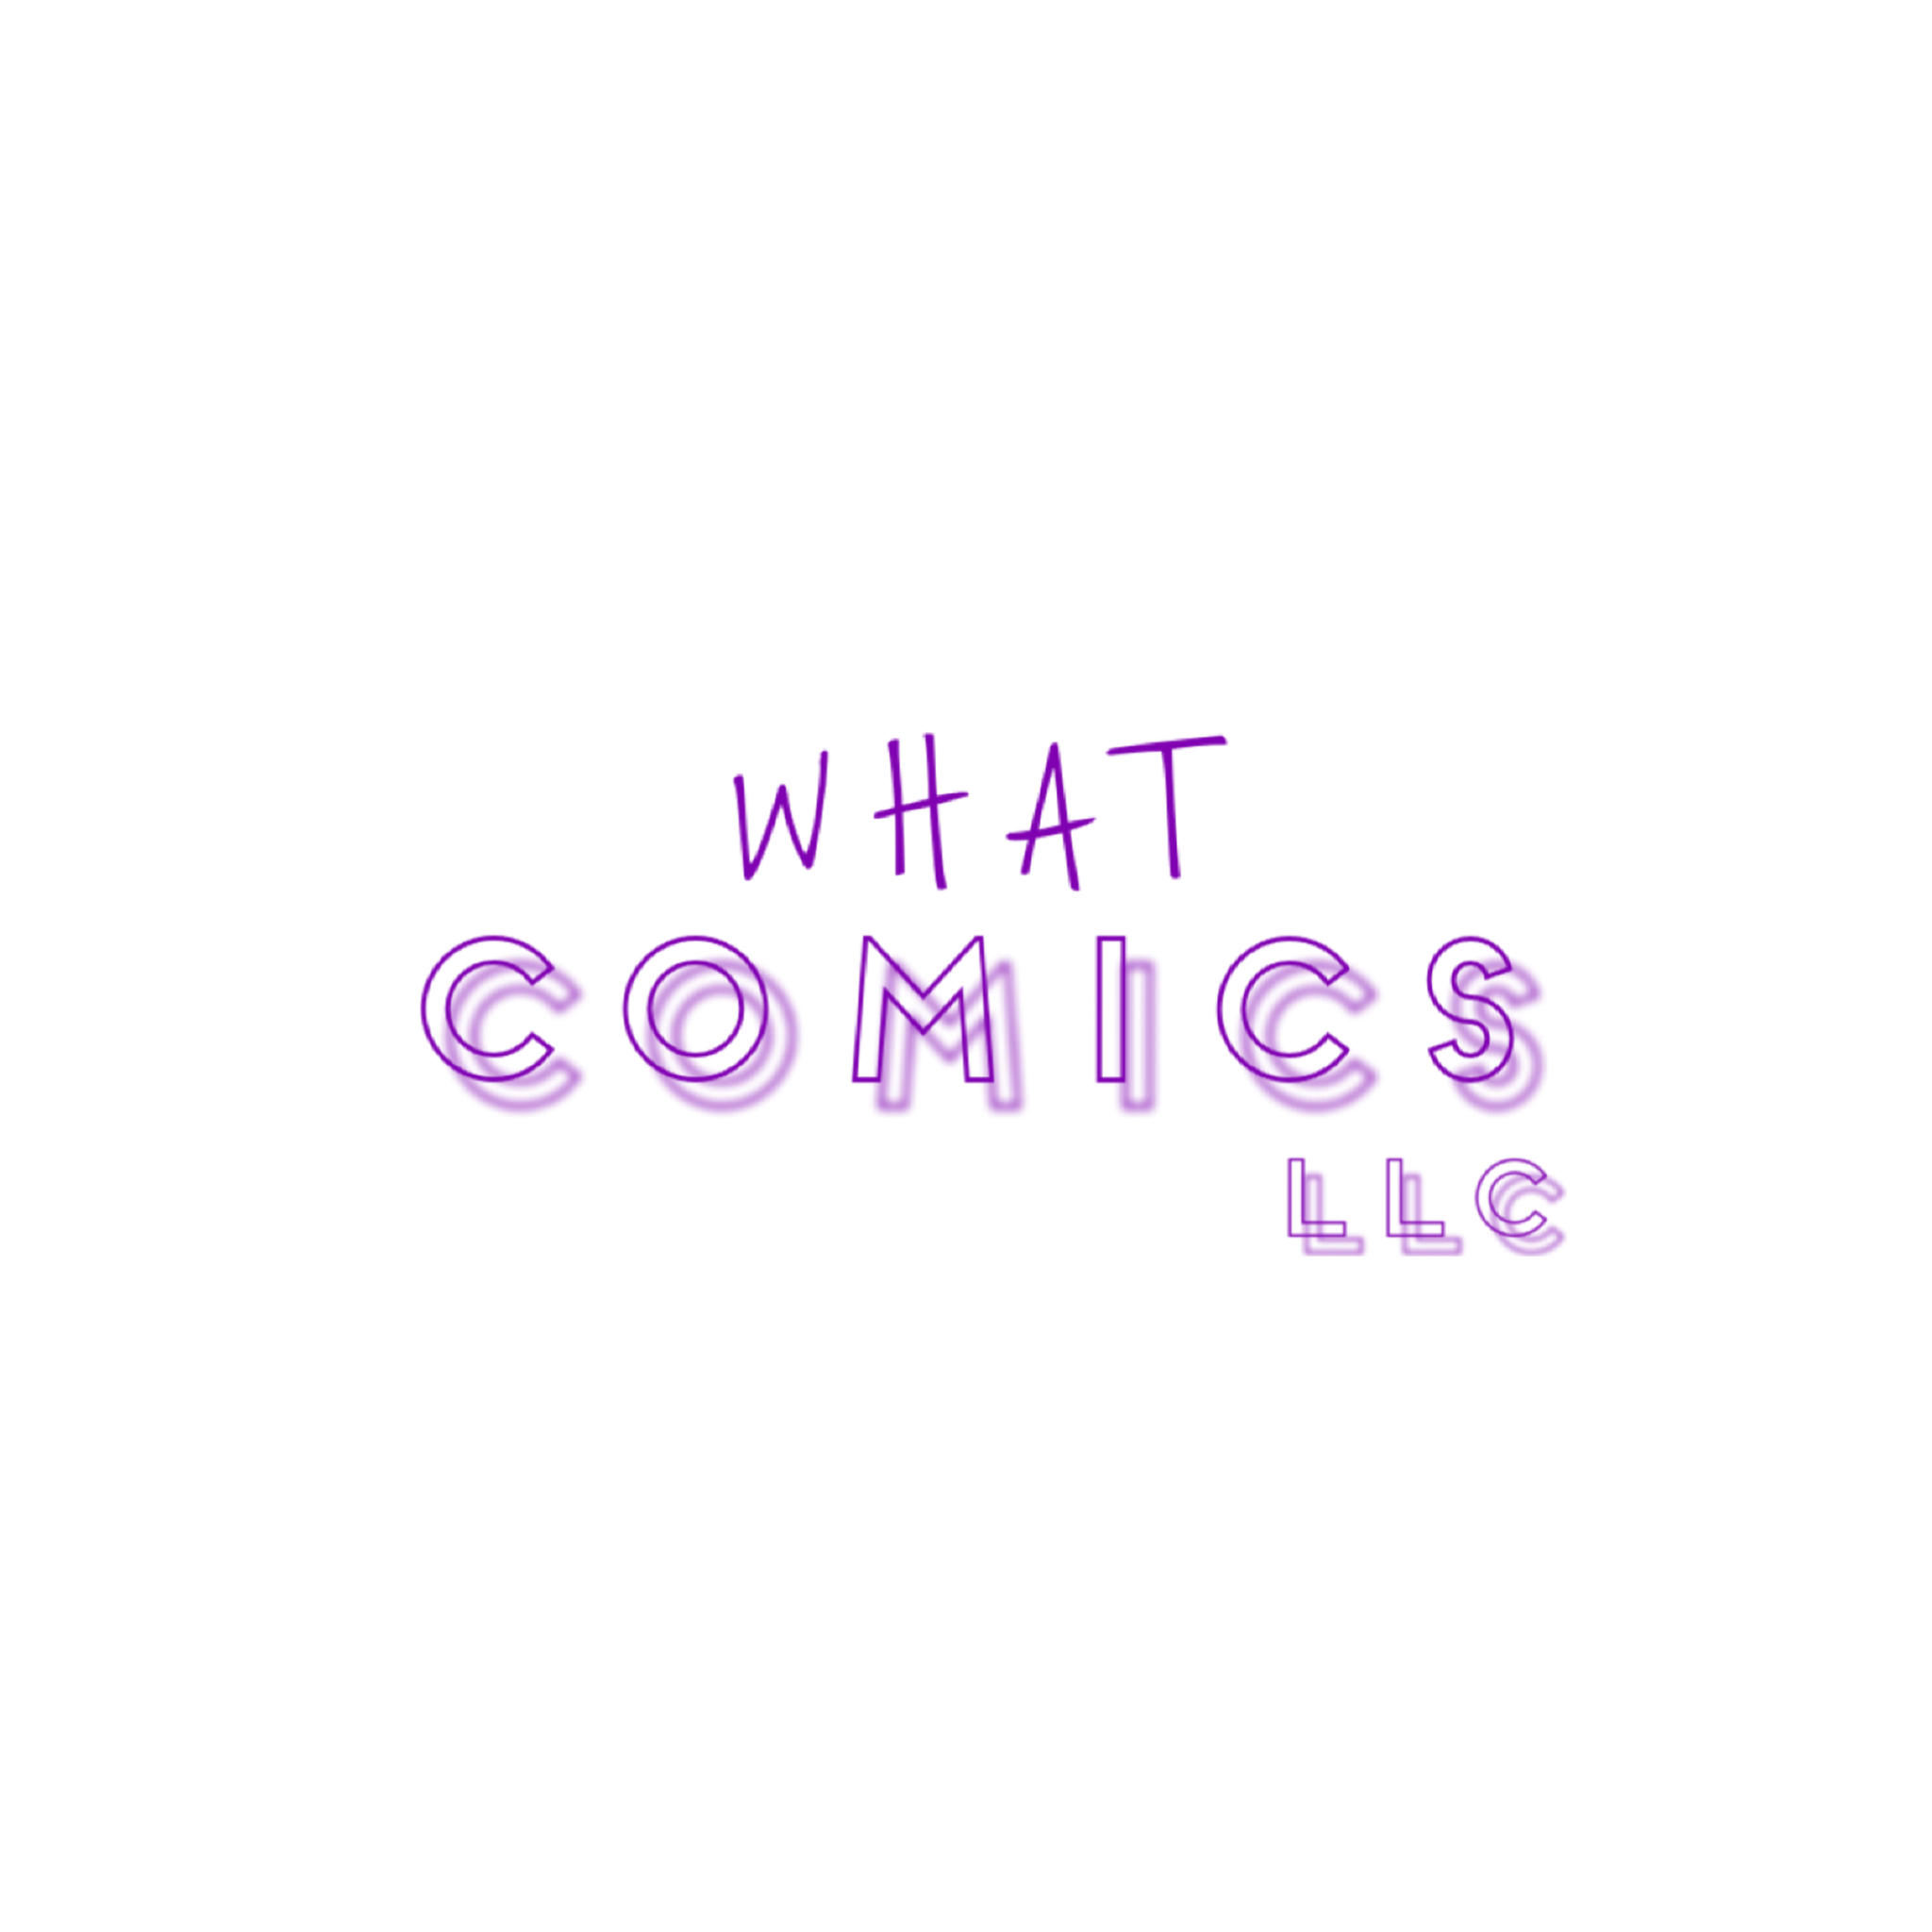 WHAT Comics, LLC